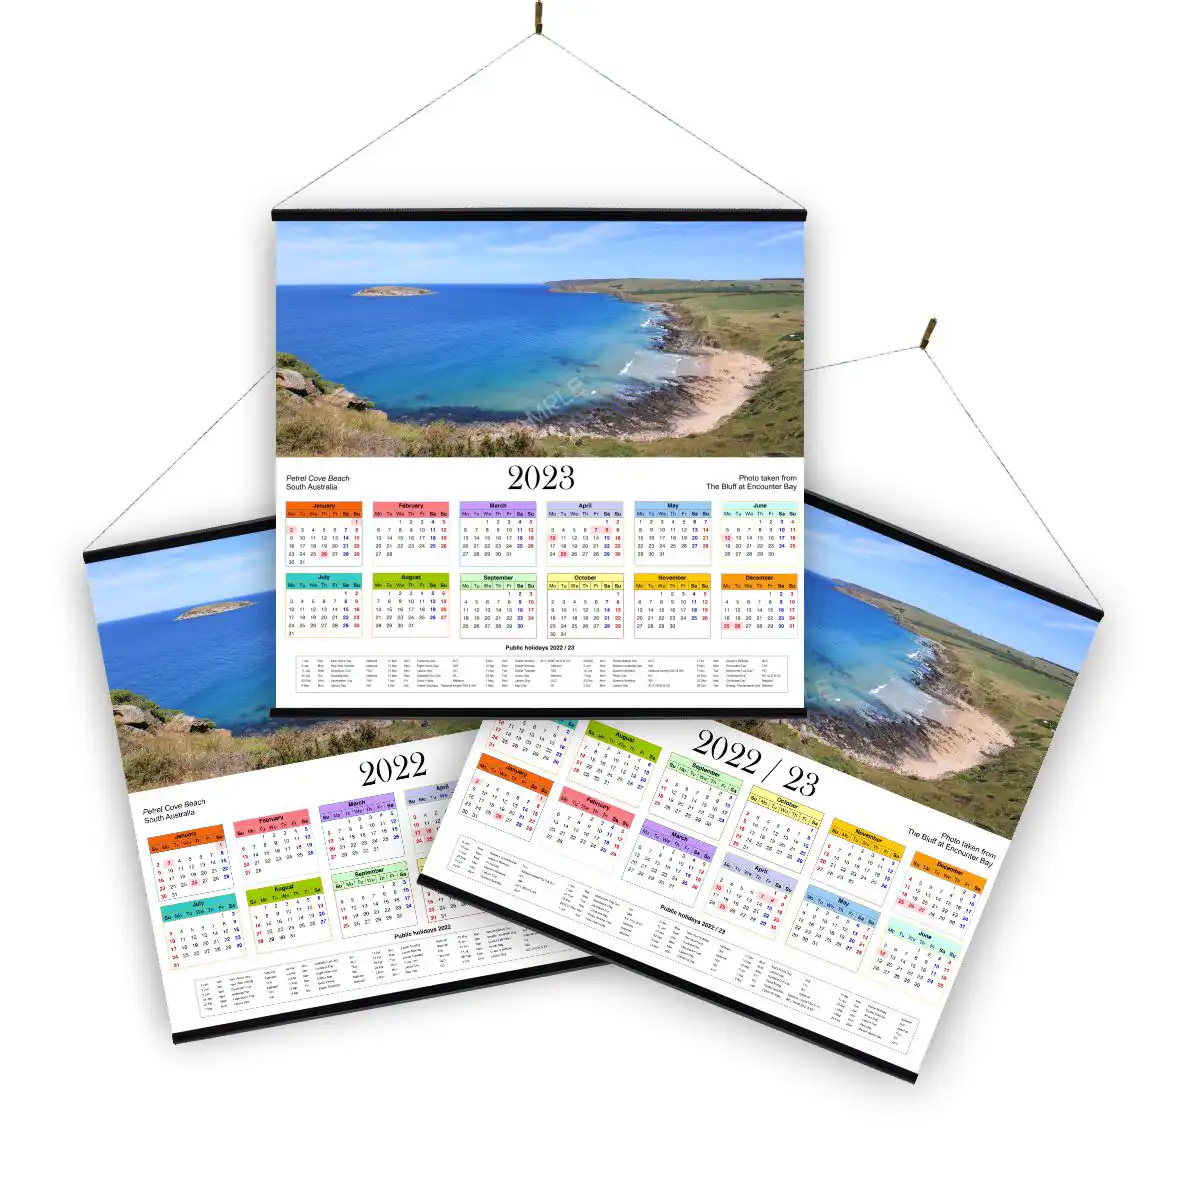 Calendar - Petrel Cove Beach - South Australia